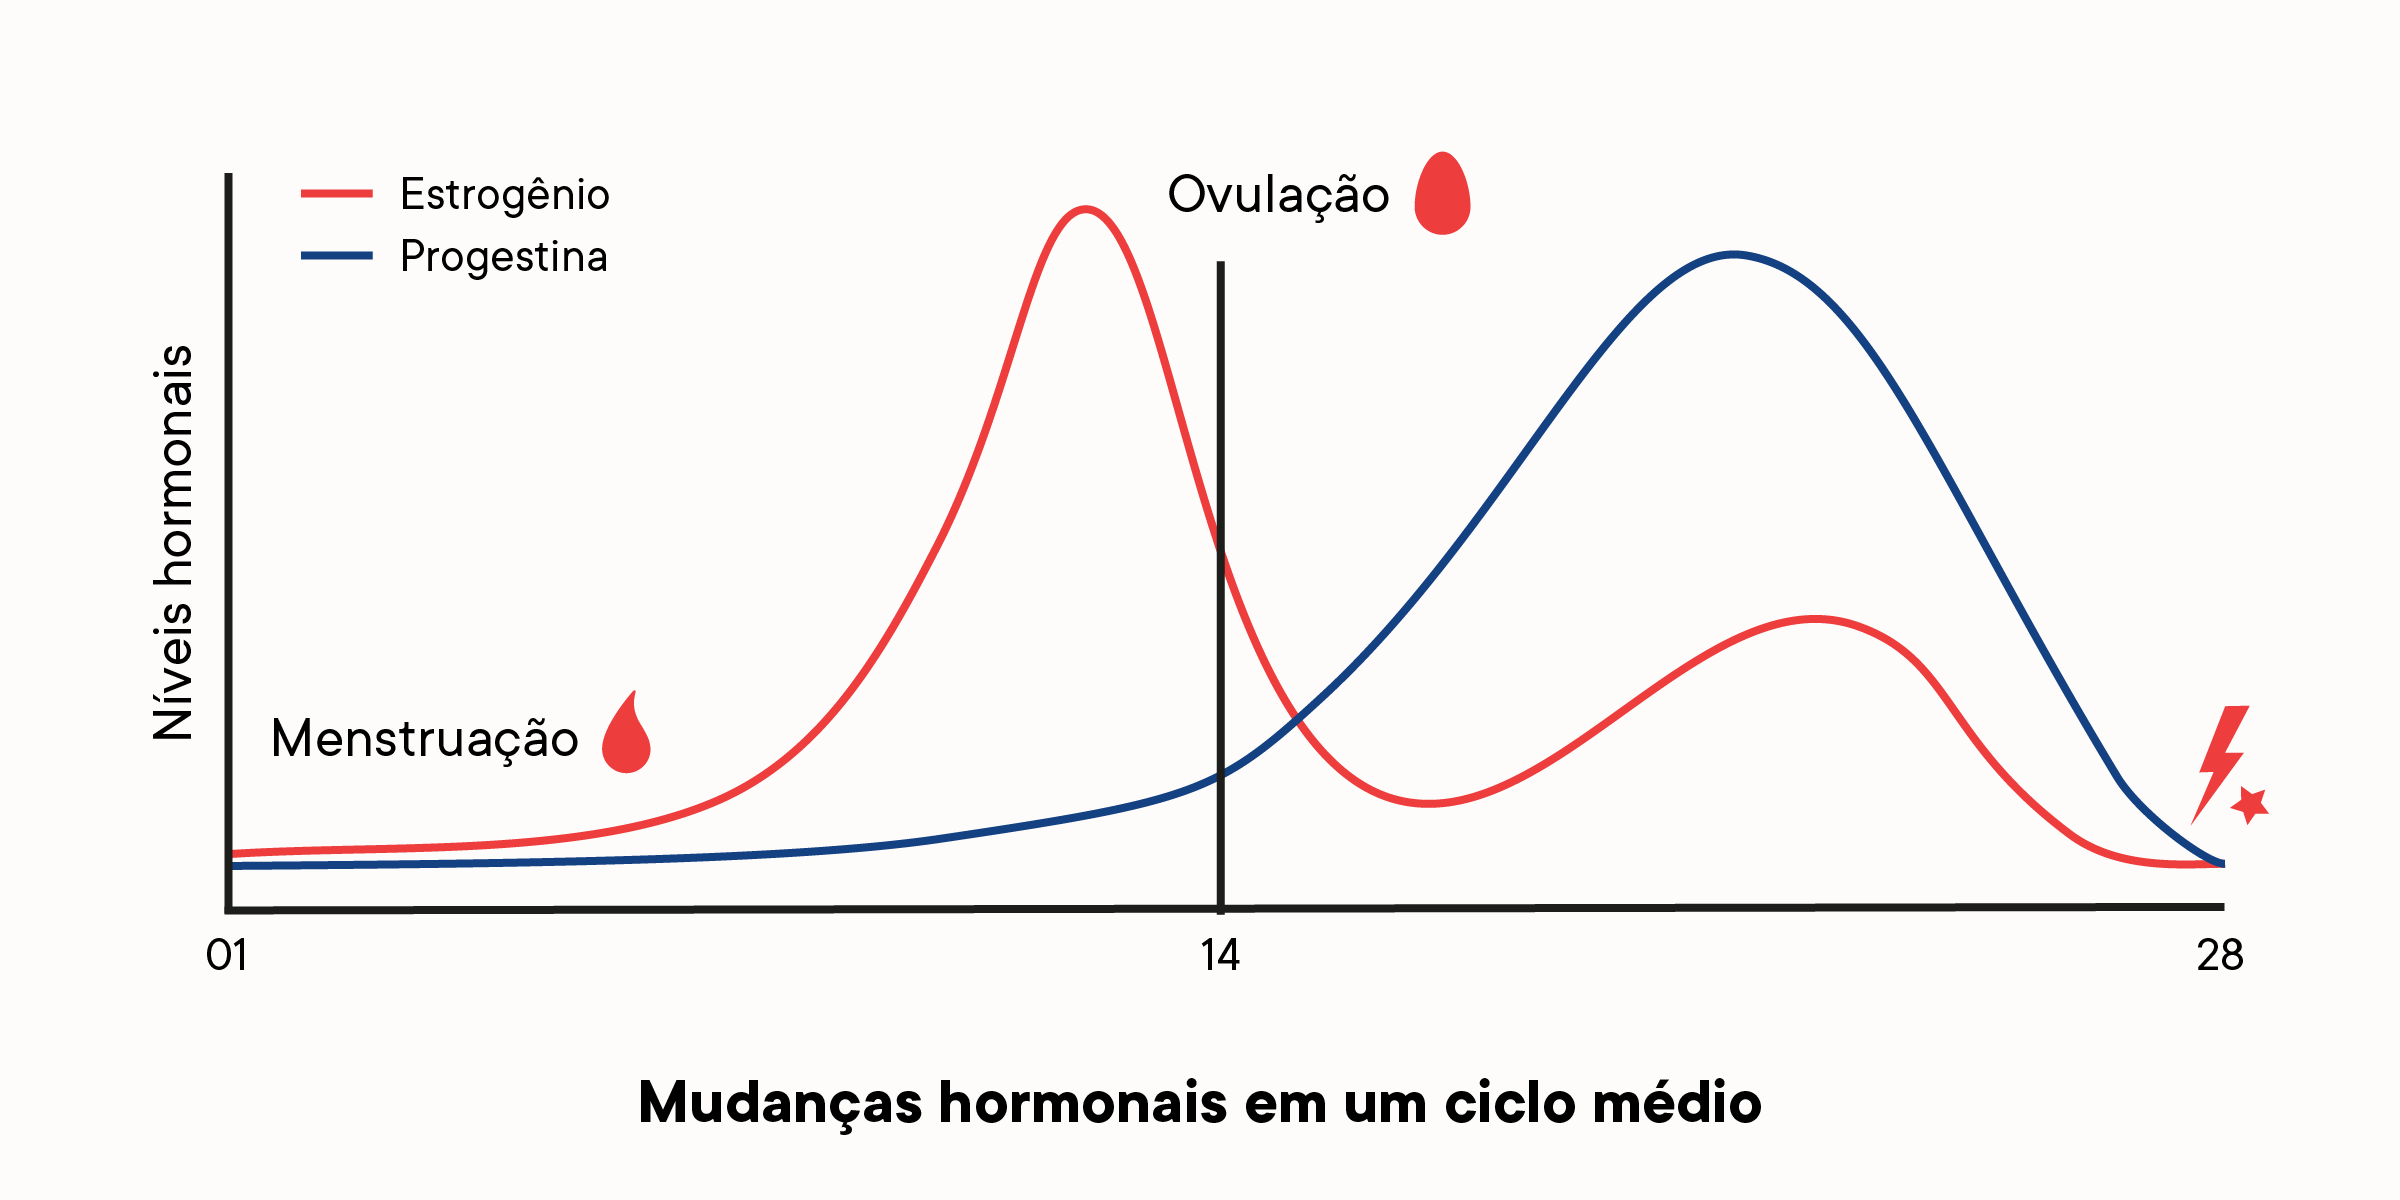 Um gráfico que descreve como os níveis de hormônio mudam ao longo de um ciclo menstrual